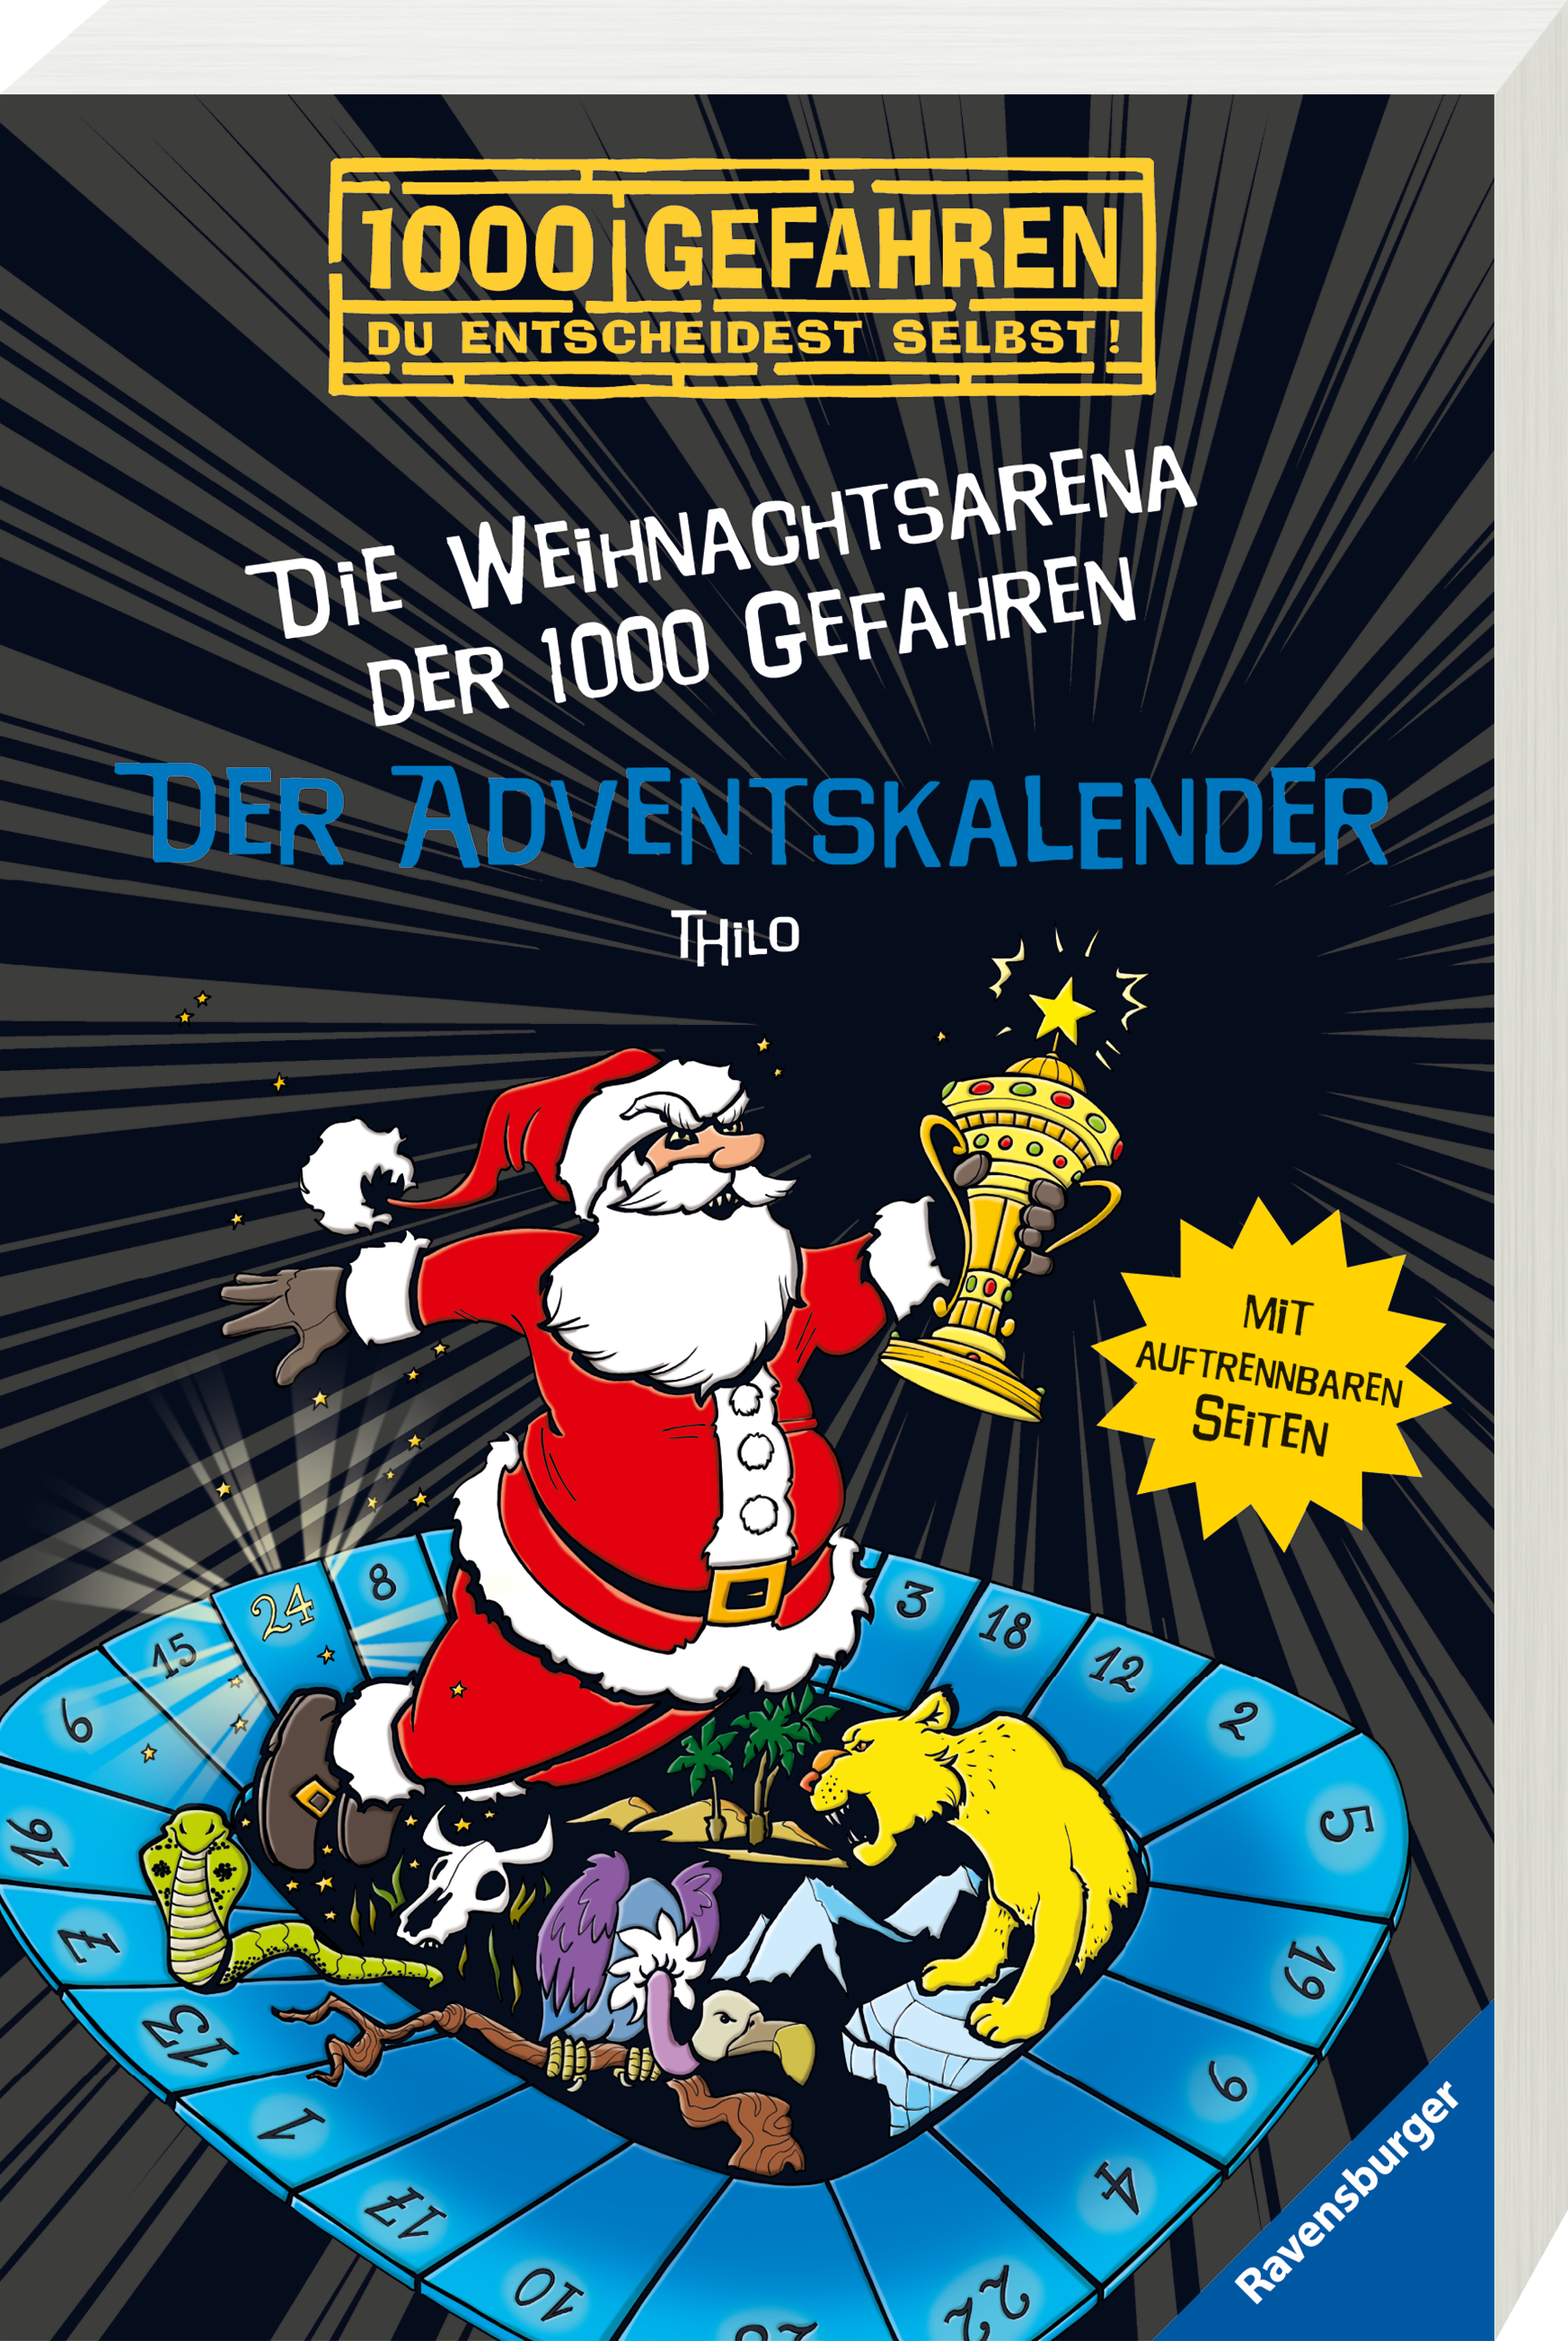 Der Adventskalender - Die Weihnachtsarena der 1000 Gefahren